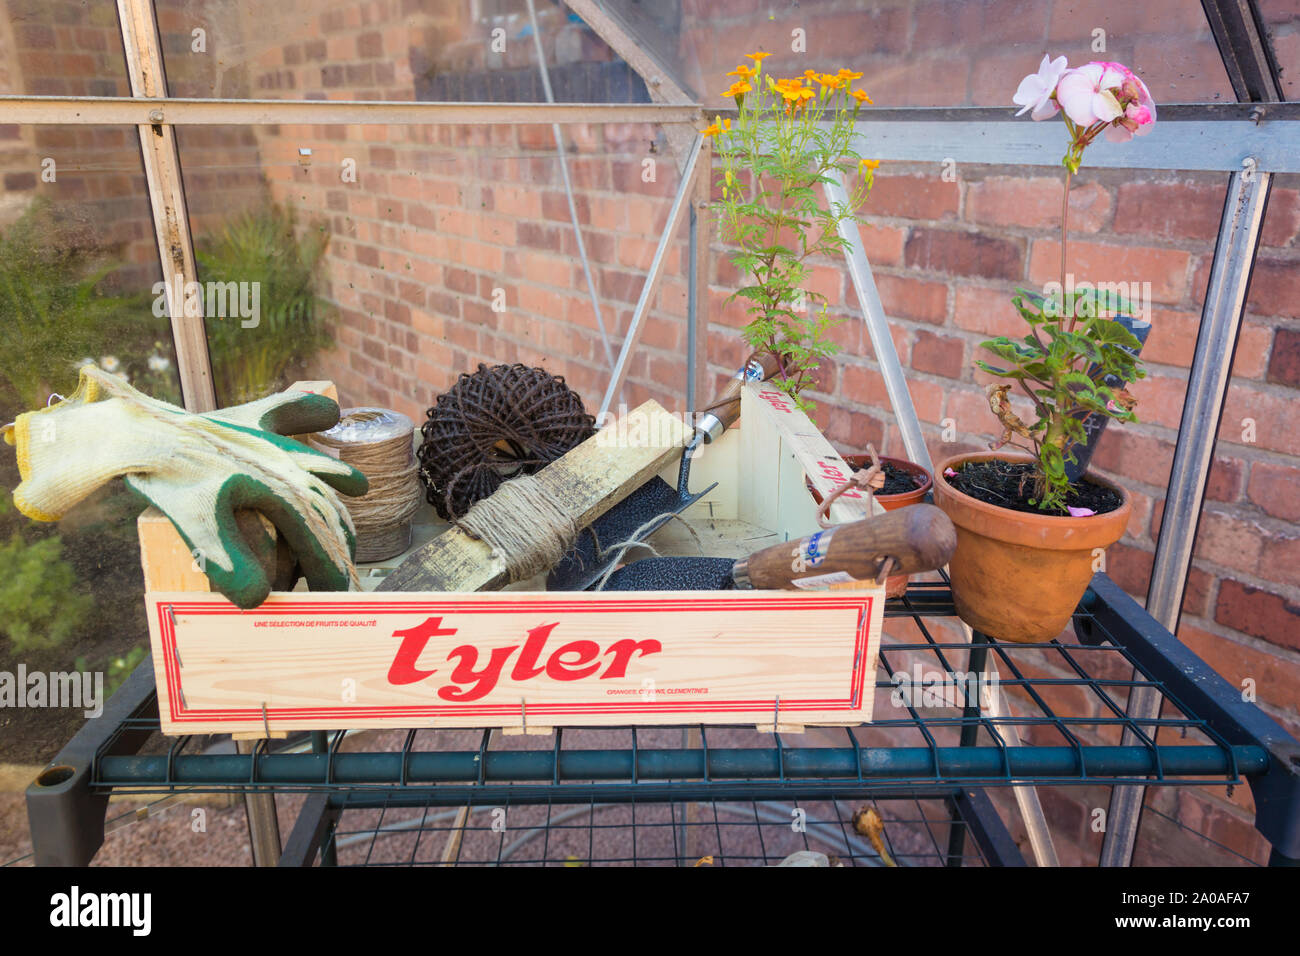 Gartengeräte in einem Kasten und Regal in einem Garten Gewächshaus Stockfoto